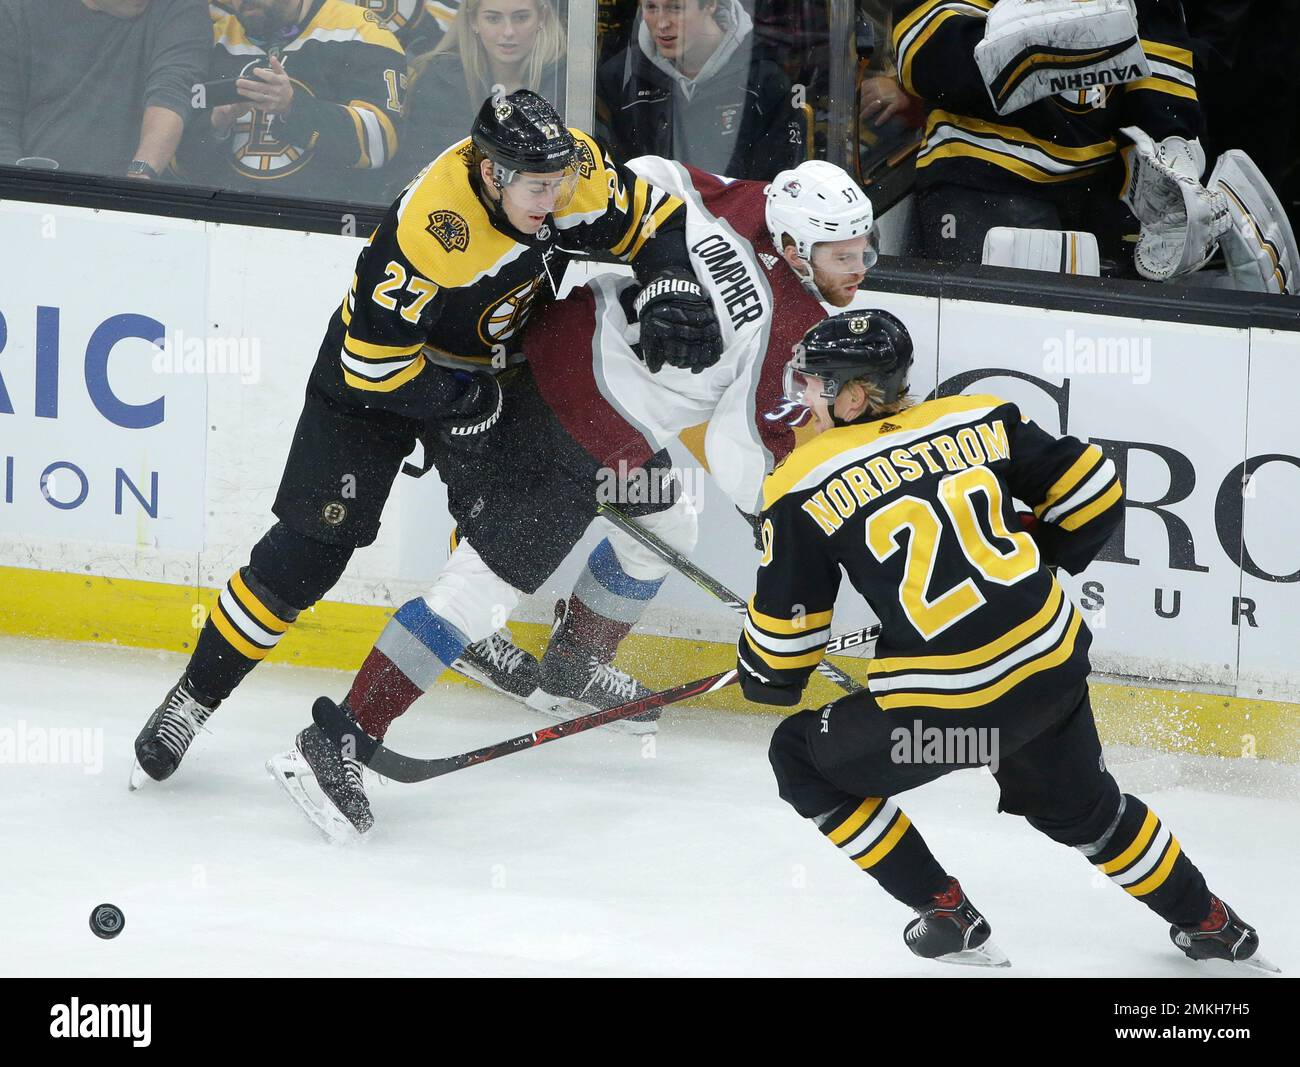 Boston Bruins' Joakim Nordstrom, of Sweden, skates against the St